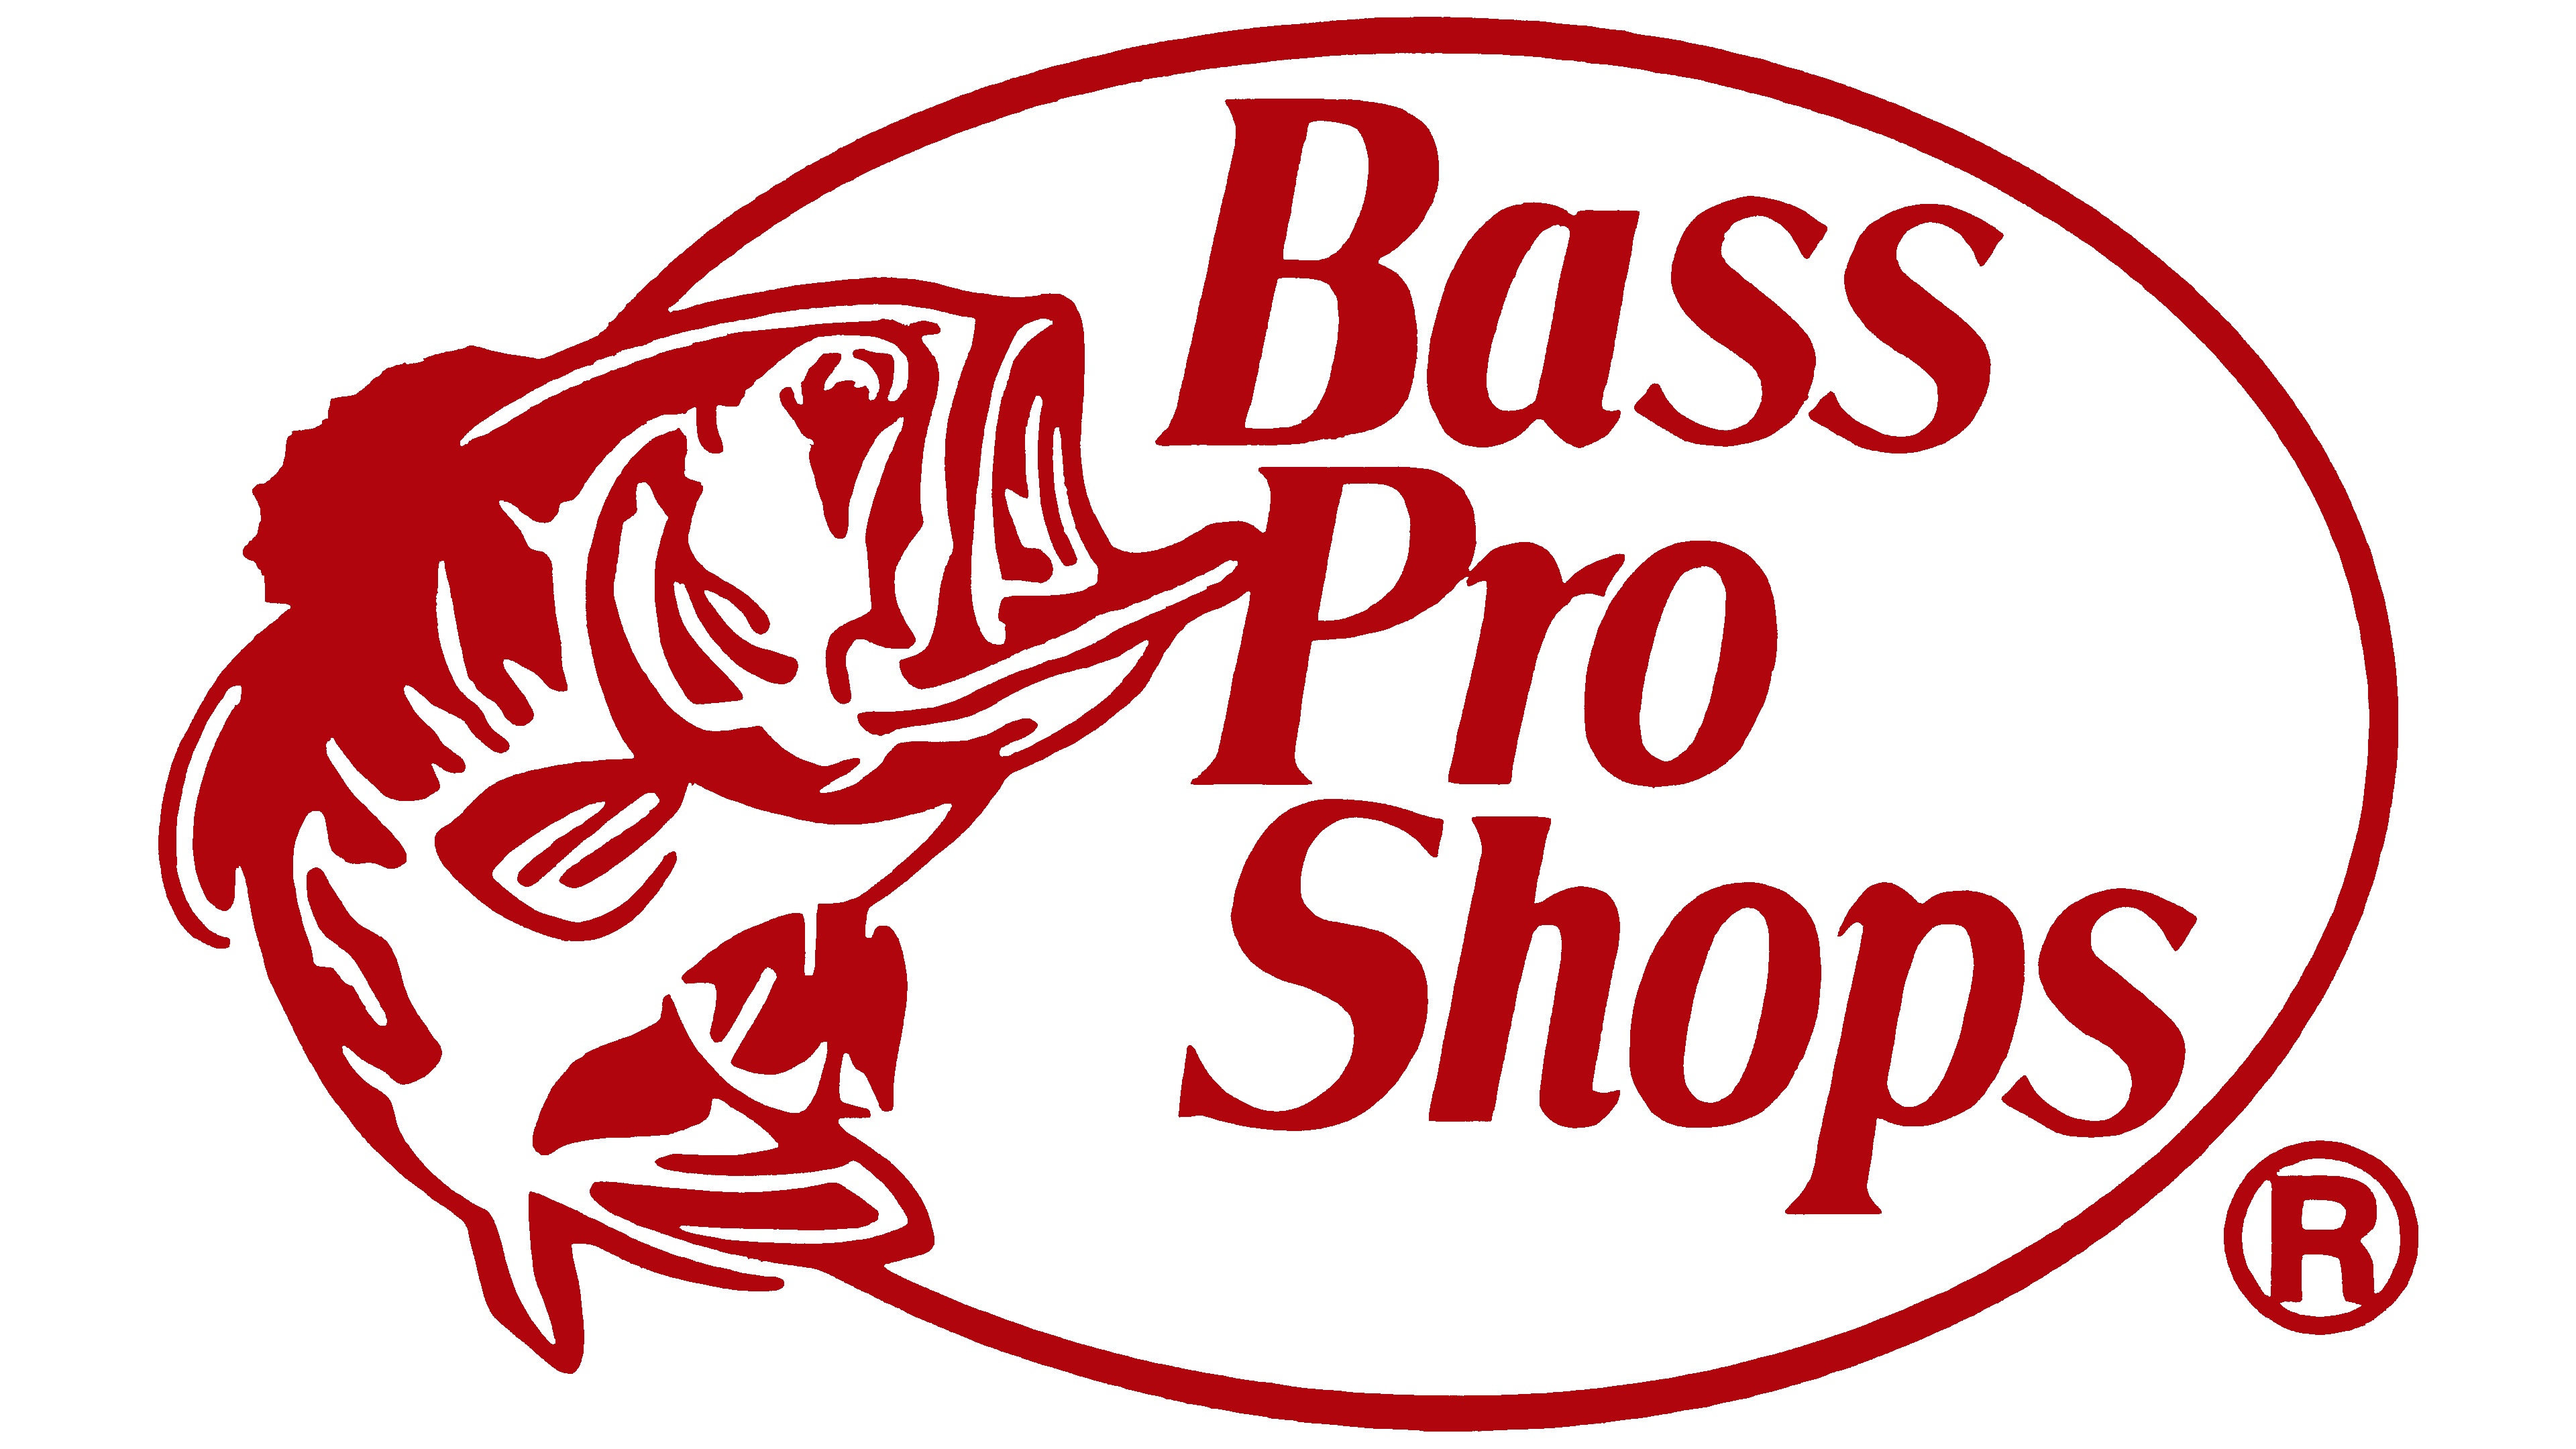 Bass pro shops. Bass Pro shops logo. Магазины Bass Pro shop. Bass co логотип. Bass Pro shops футболка.